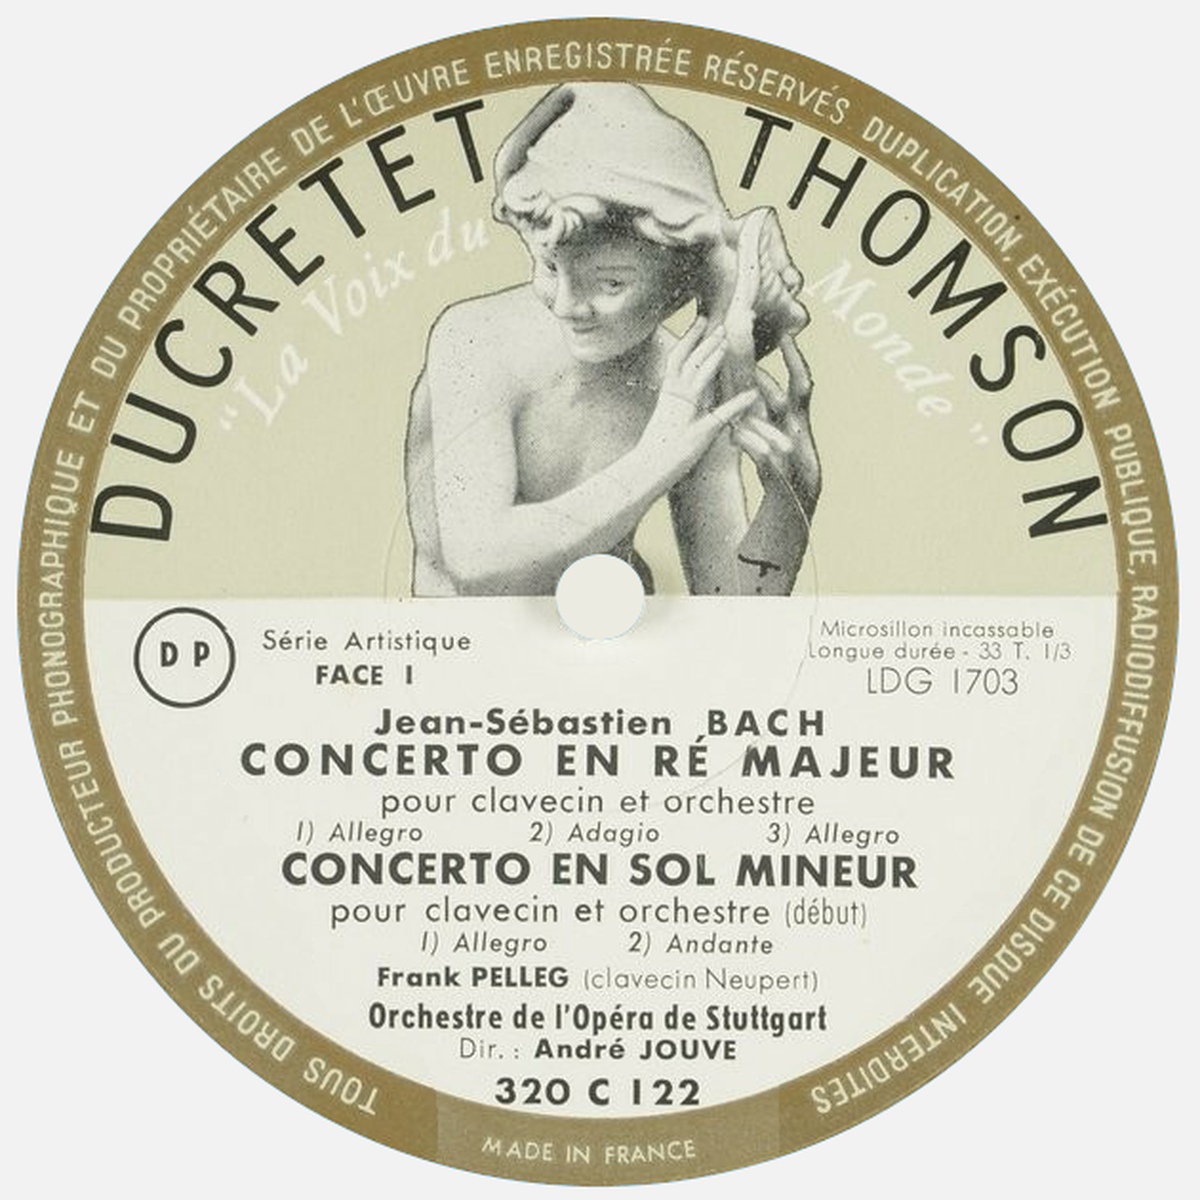 Étiquette recto  du disque Ducretet-Thomson 320 C 122, Cliquer sur la photo pour une vue agrandie et quelques infos